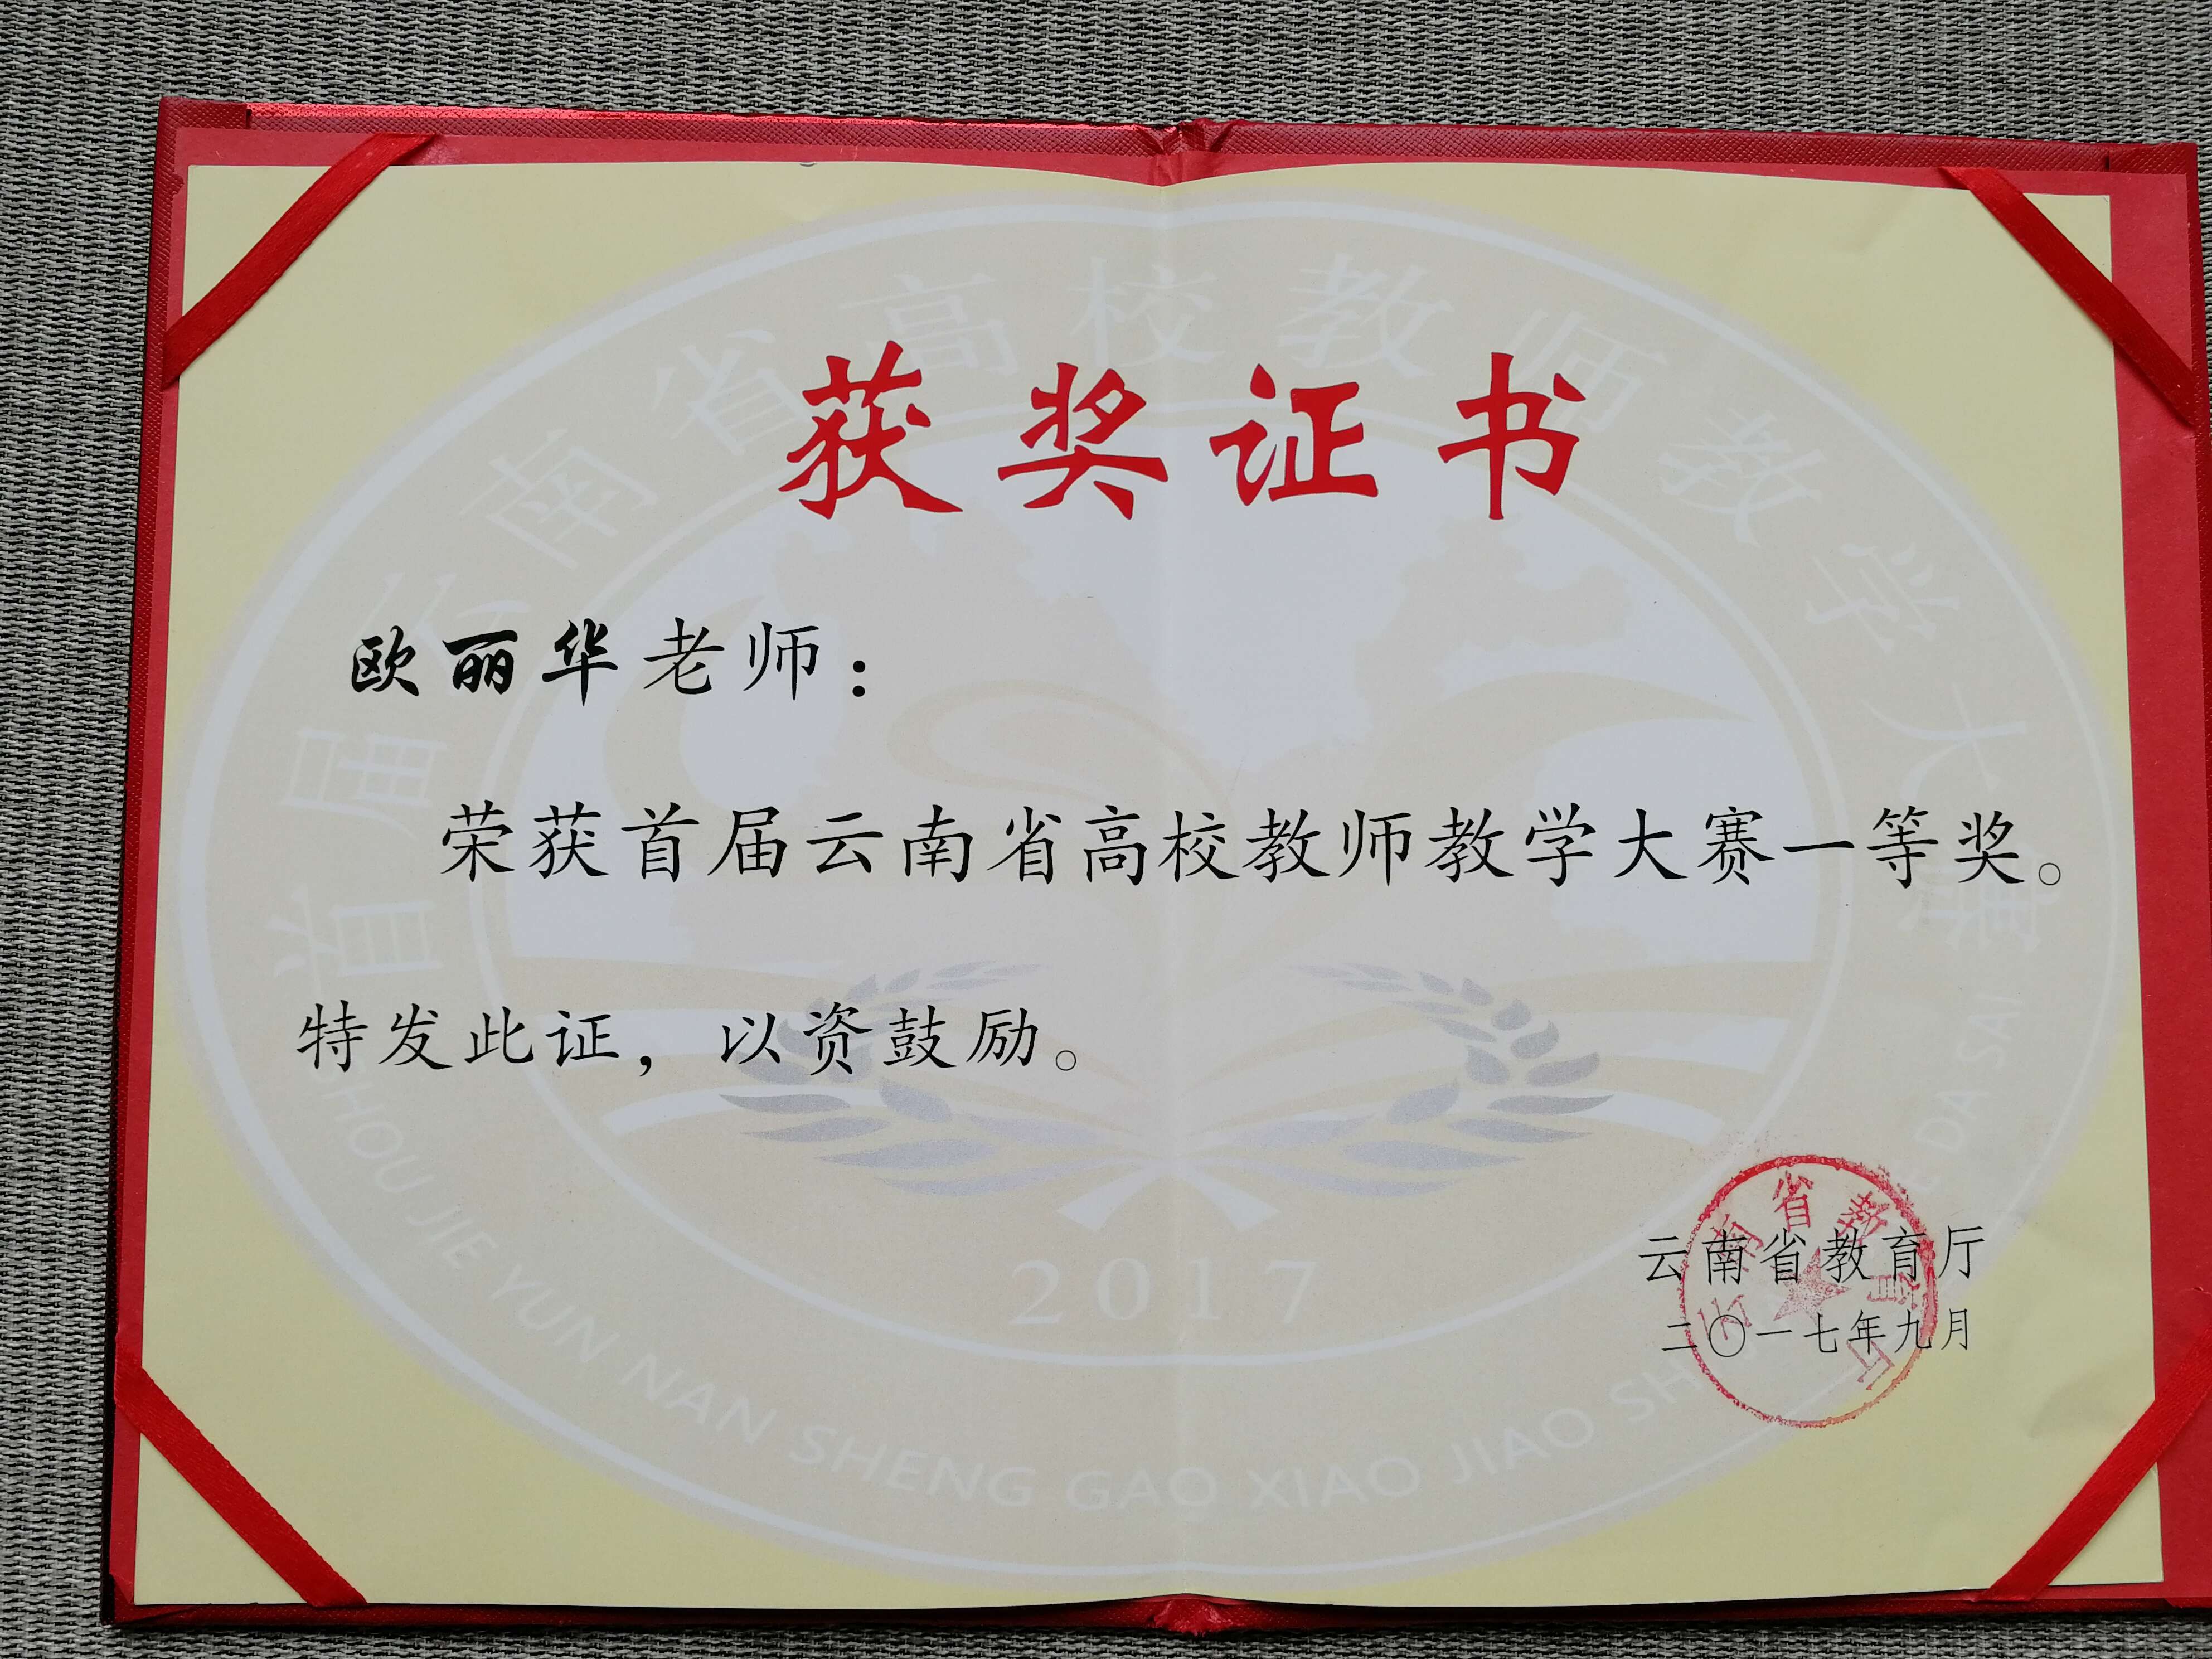 经济管理学院教师欧丽华老师荣获2017年云南省高校教师教学大赛一等奖